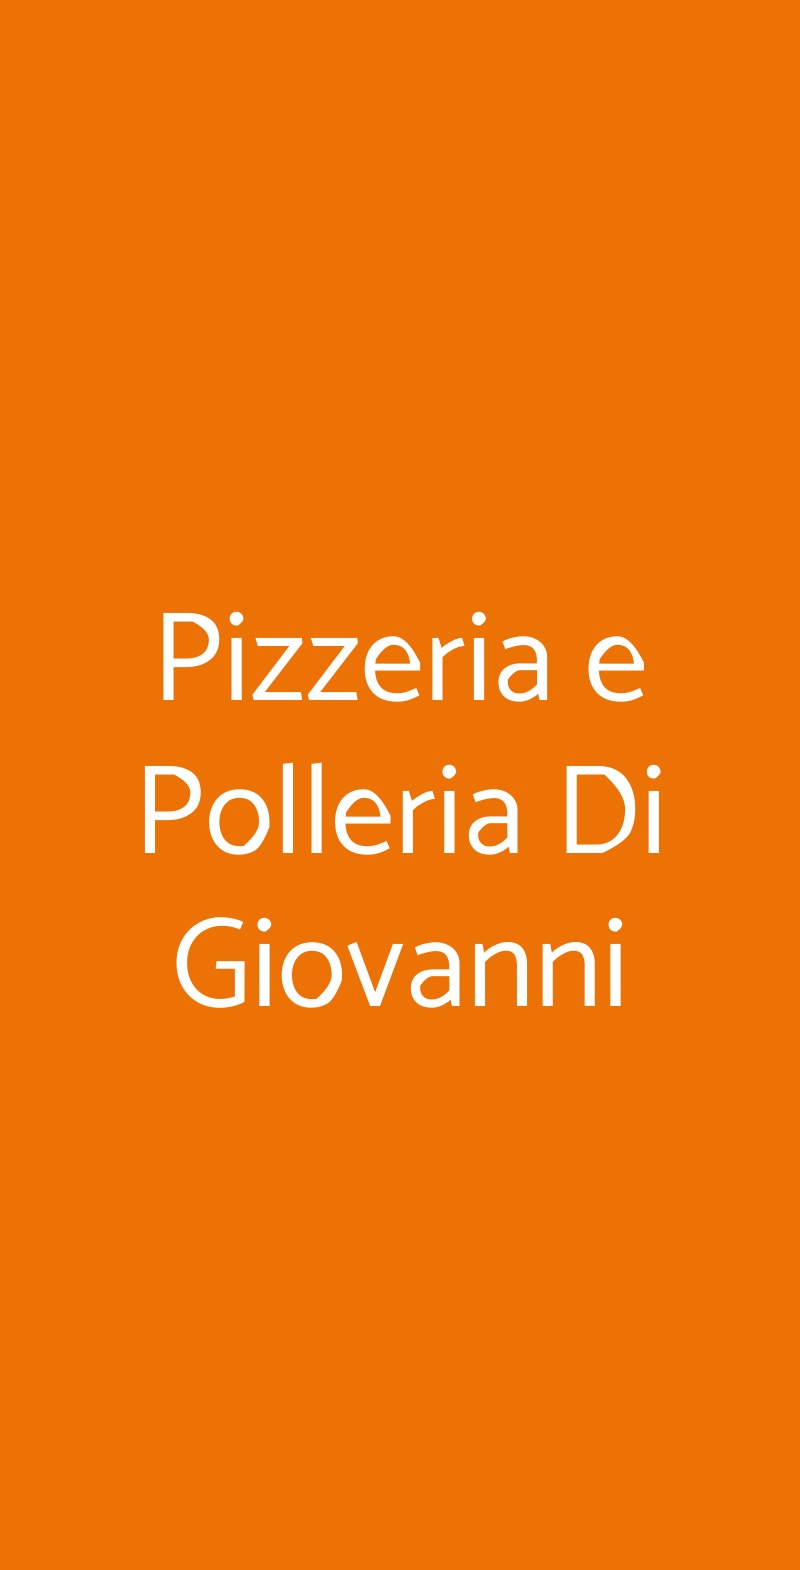 Pizzeria e Polleria Di Giovanni Palermo menù 1 pagina